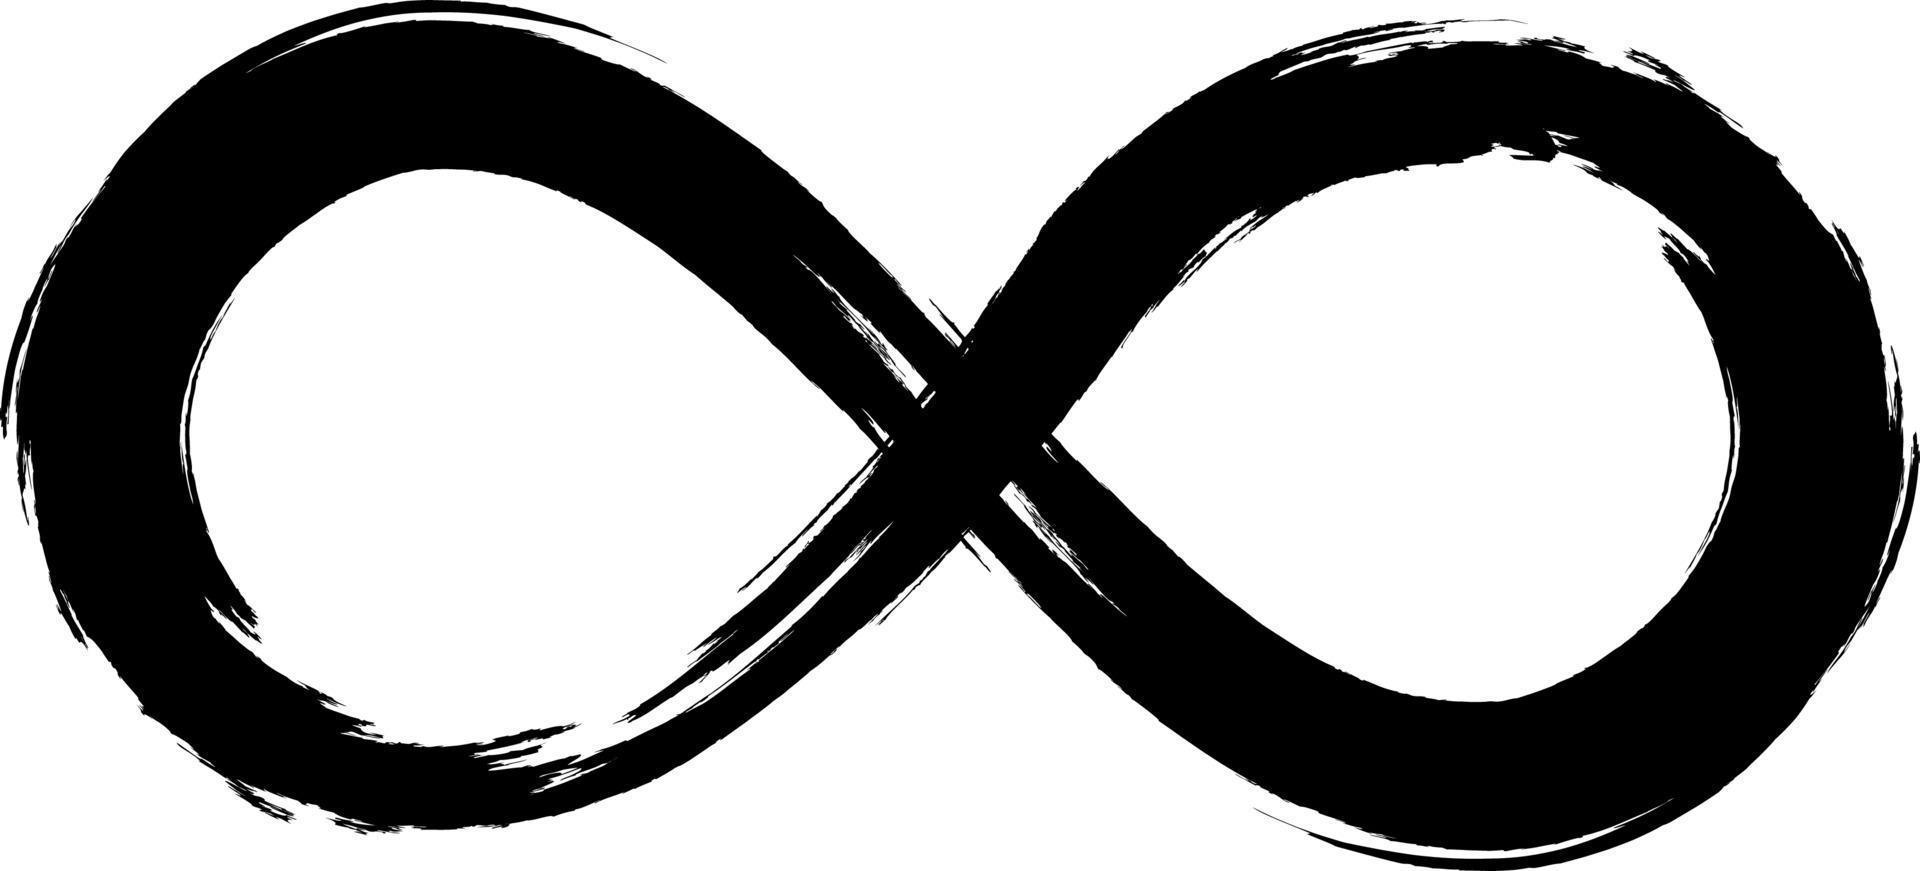 Grunge-Unendlichkeitssymbol. handbemalt mit schwarzer Farbe. Grunge-Pinselstrich. Ikone der modernen Ewigkeit. Grafikdesign-Element. unendliche Möglichkeiten, endloser Prozess. vektor